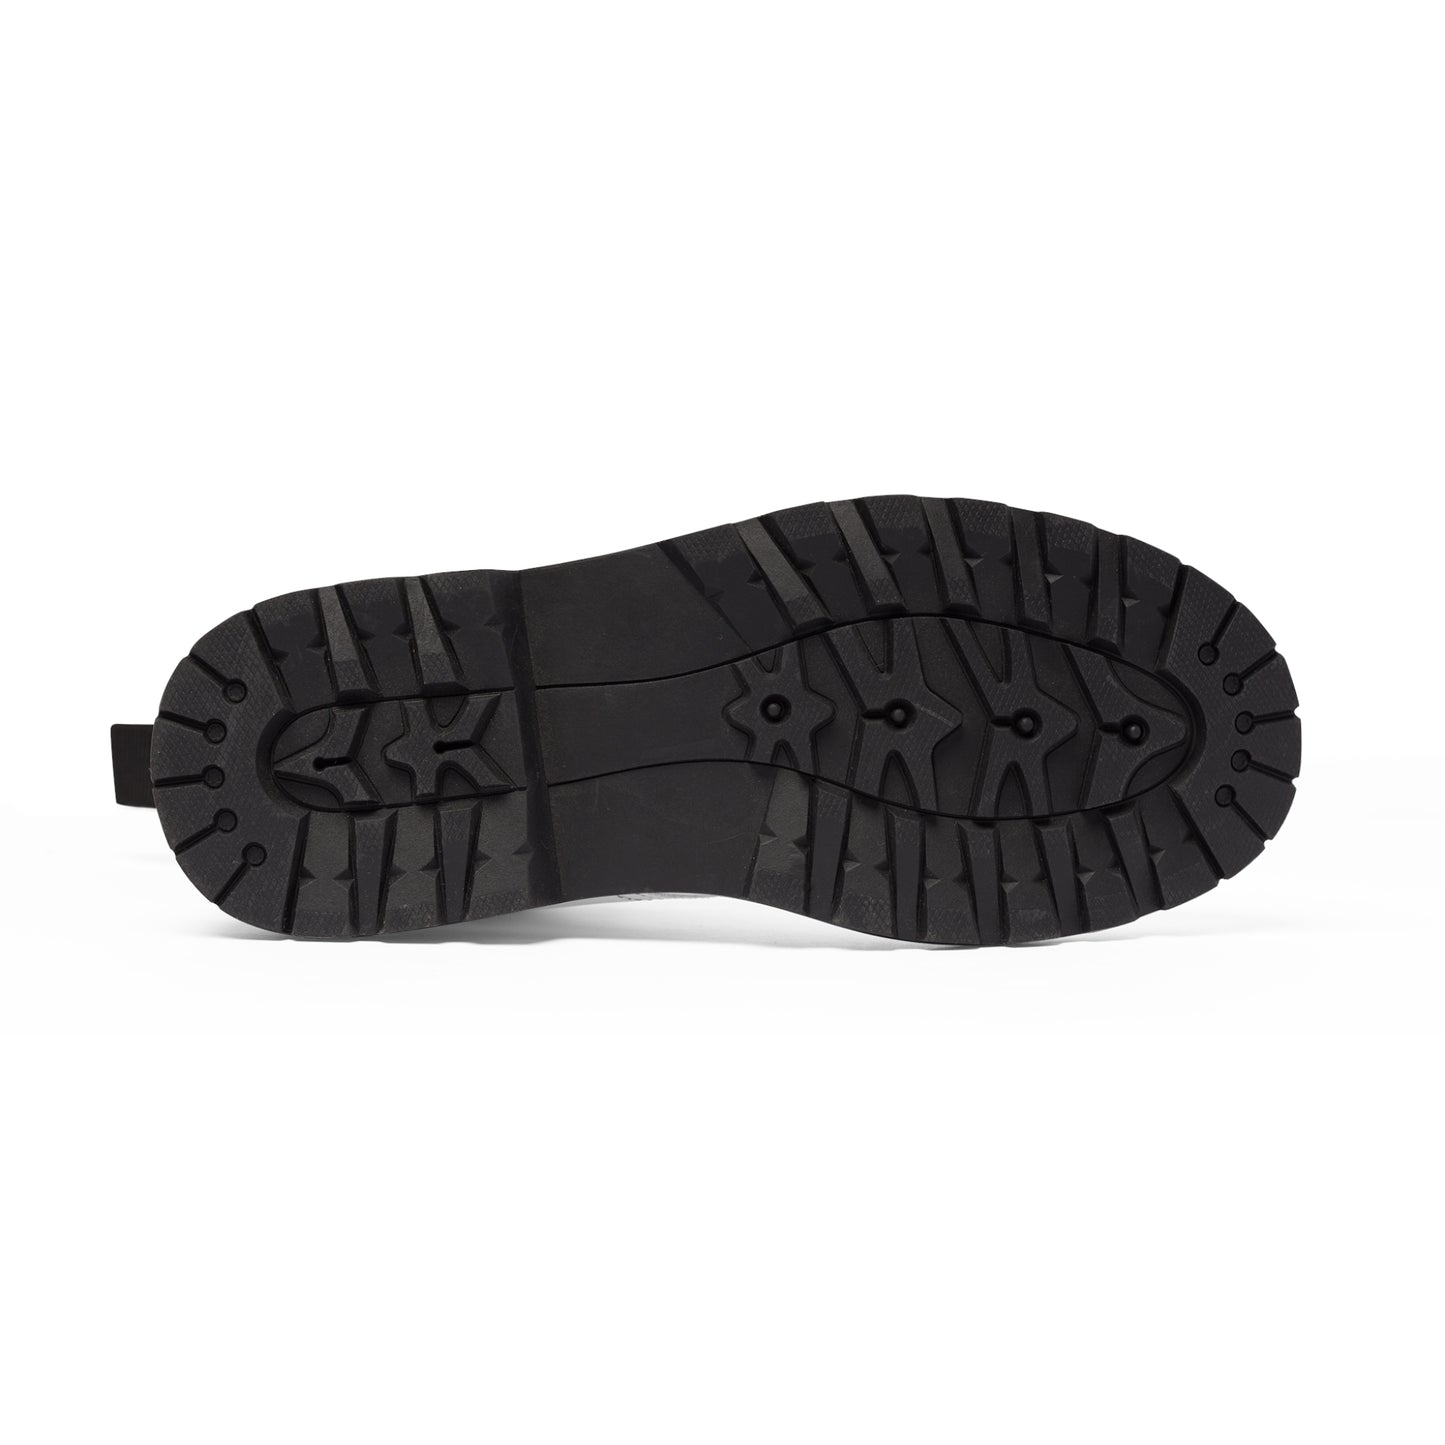 Men's Canvas Boots - 02873 US 10.5 Black sole